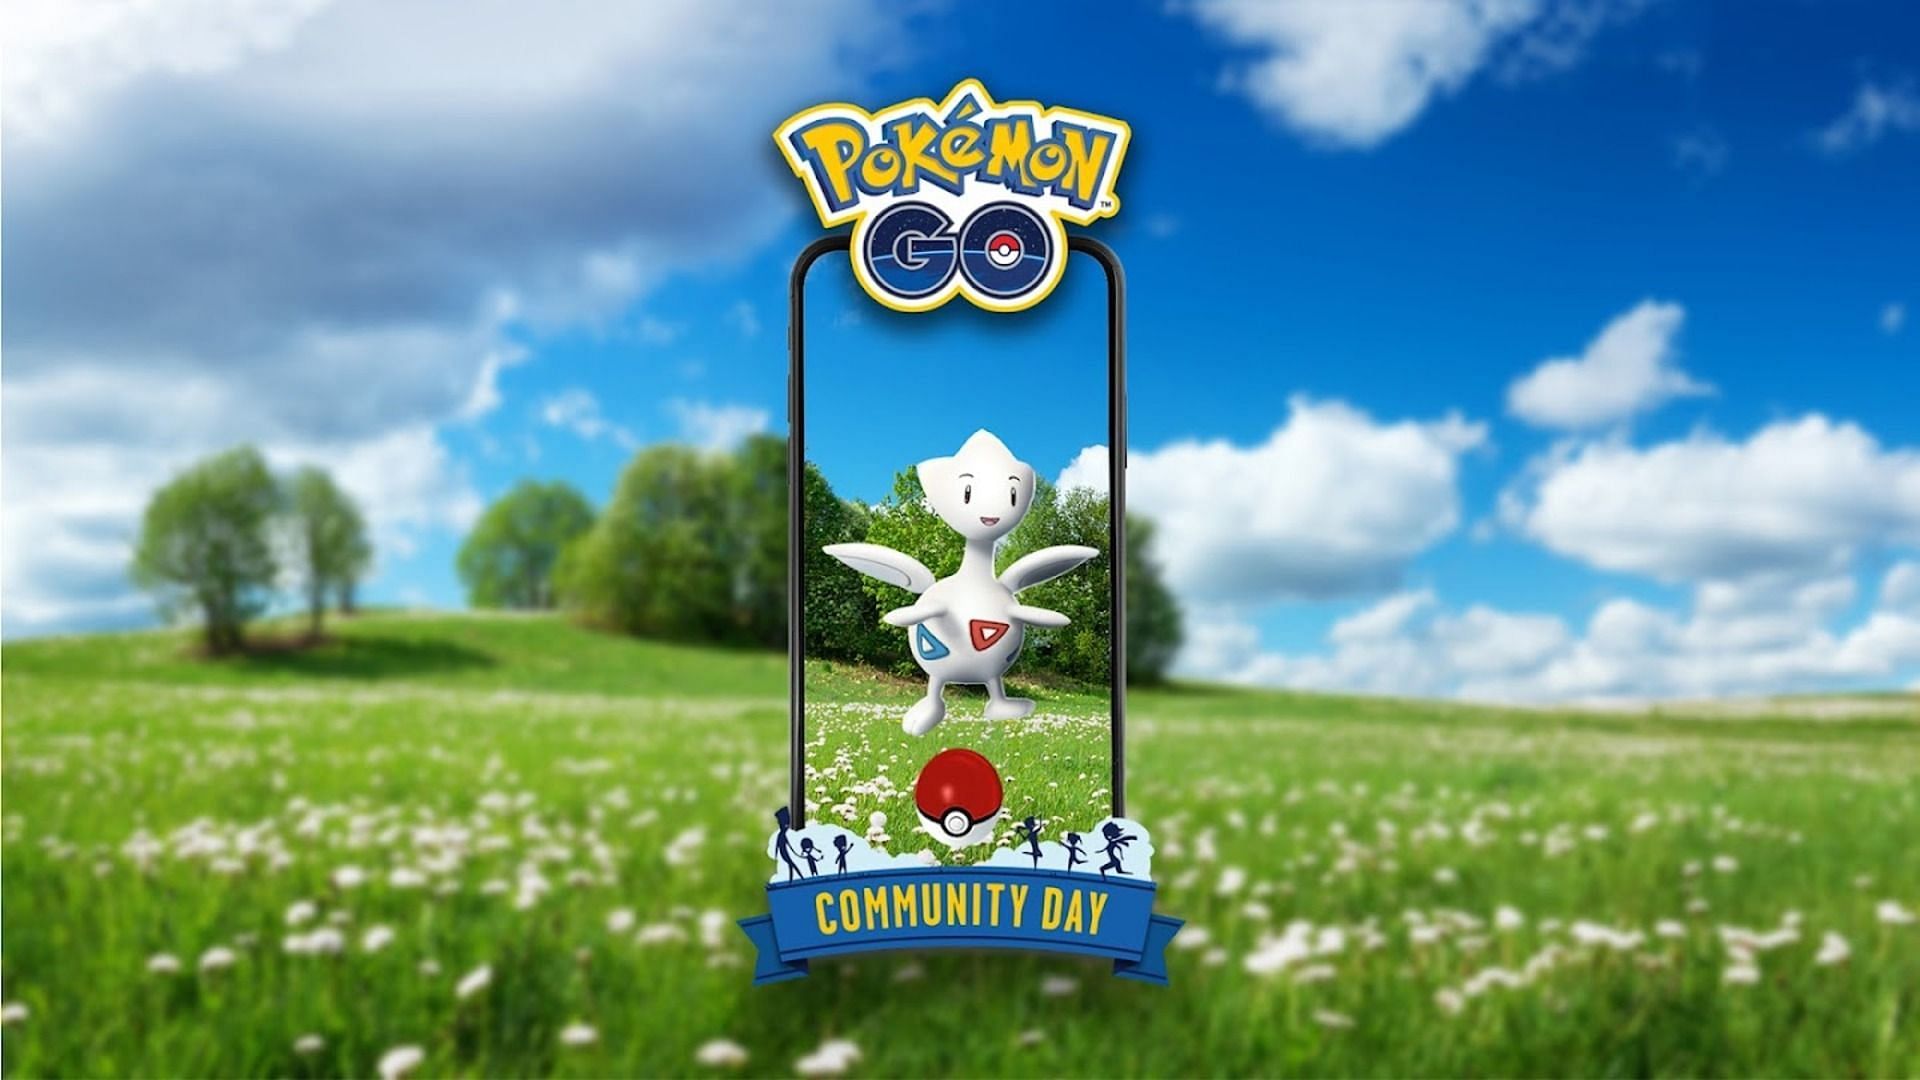 Official artwork for Pokemon GO